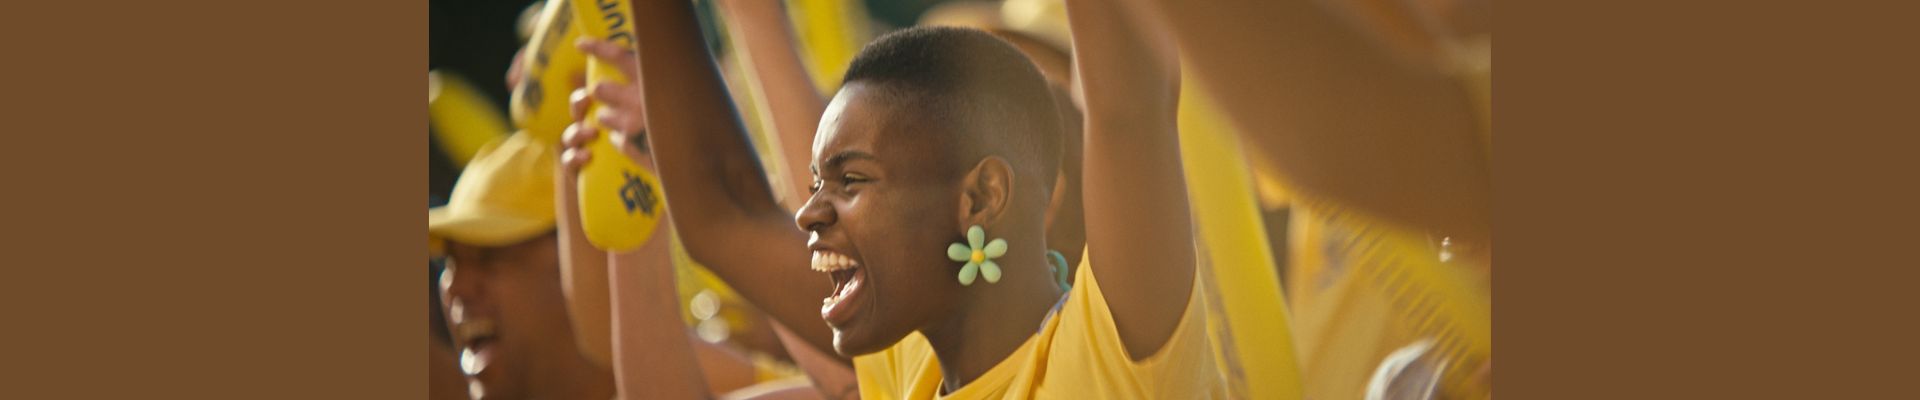 Campanha do Banco do Brasil reforça apoio ao esporte brasileiro